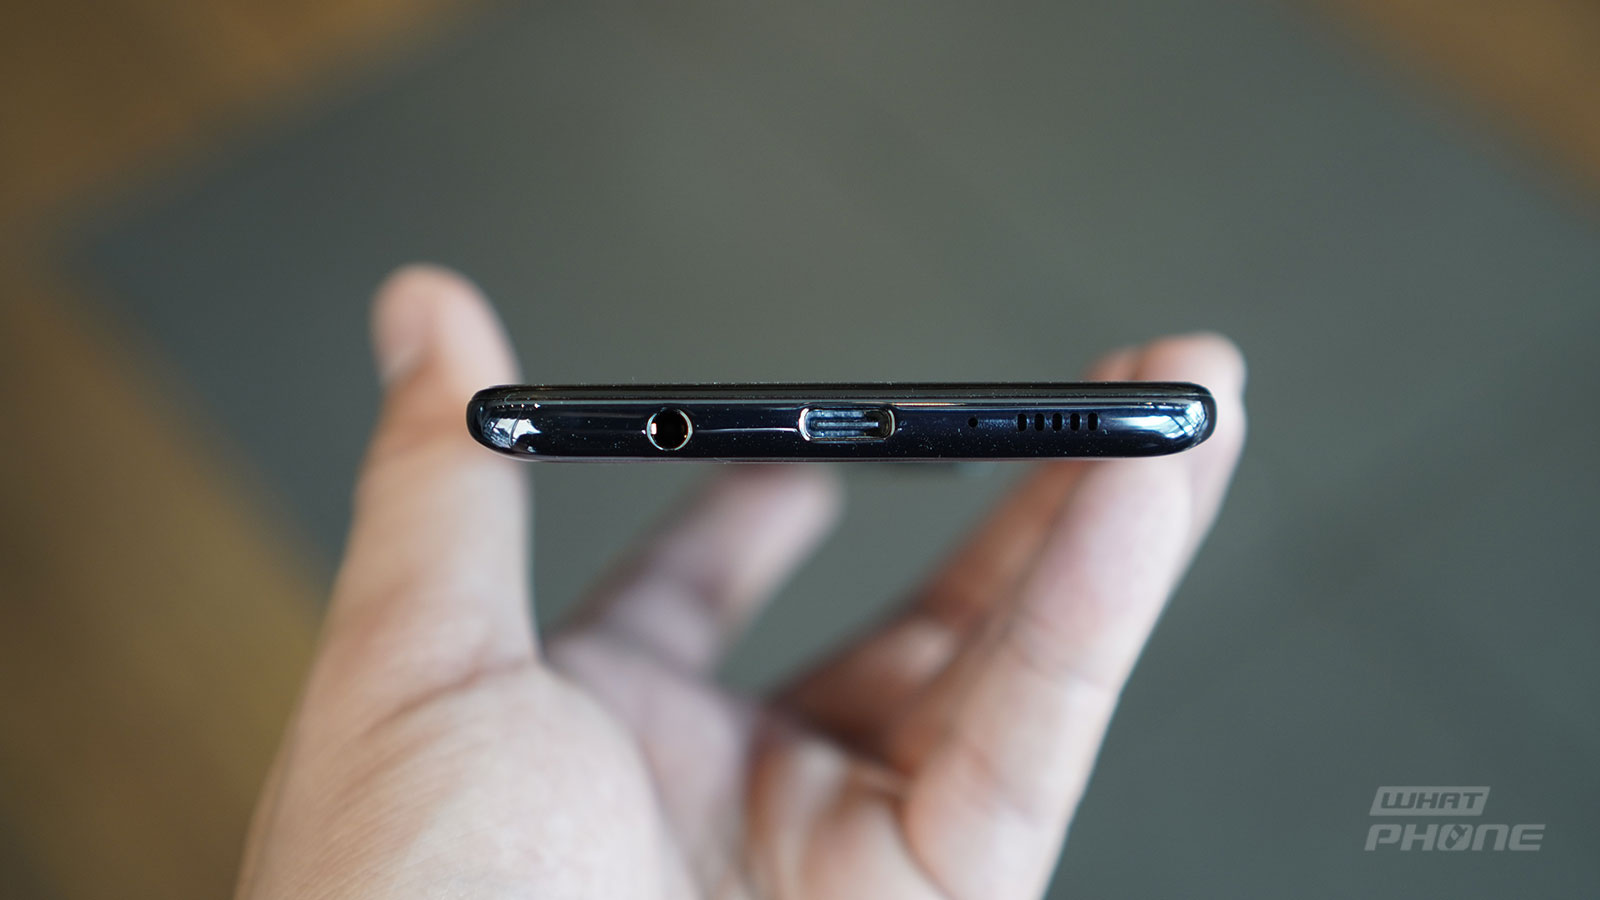 รีวิว Samsung Galaxy A71 หน้าจอใหญ่ ดีไซน์สวย เล่นเกมลื่นไหลด้วย Snapdargon 730